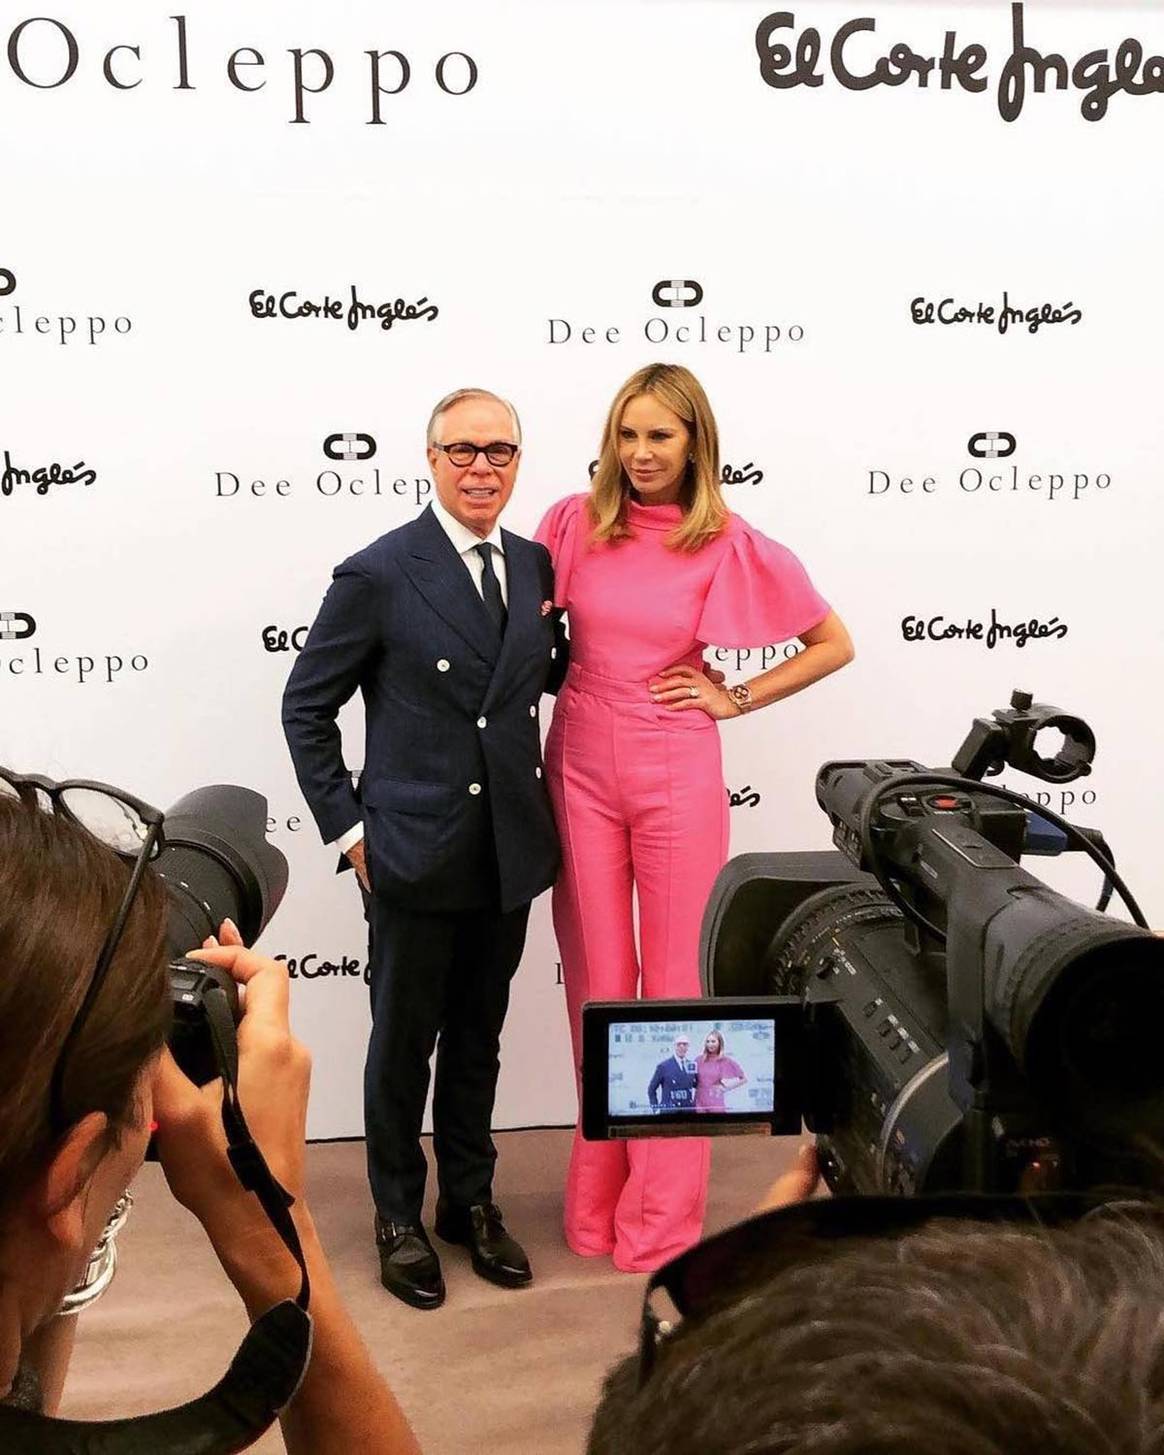 Dee Ocleppo aterriza en España con Tommy Hilfiger como embajador de marca